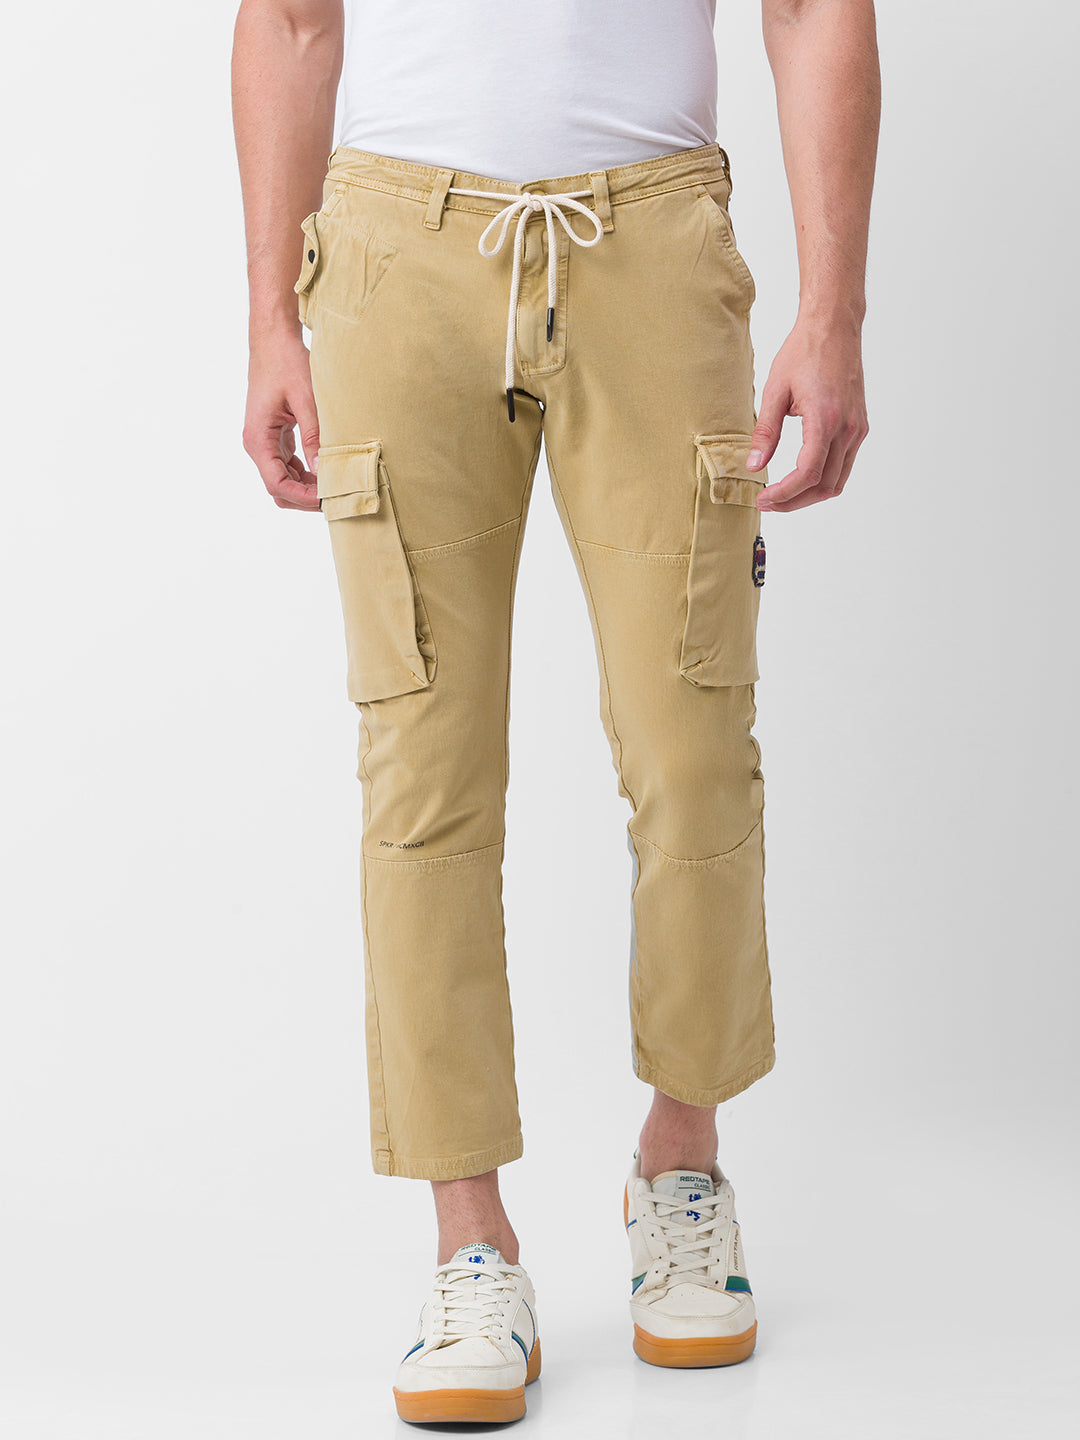 Spykar Khaki Cotton Slim Fit Regular Length Trousers For Men   vot02bbcg033khaki